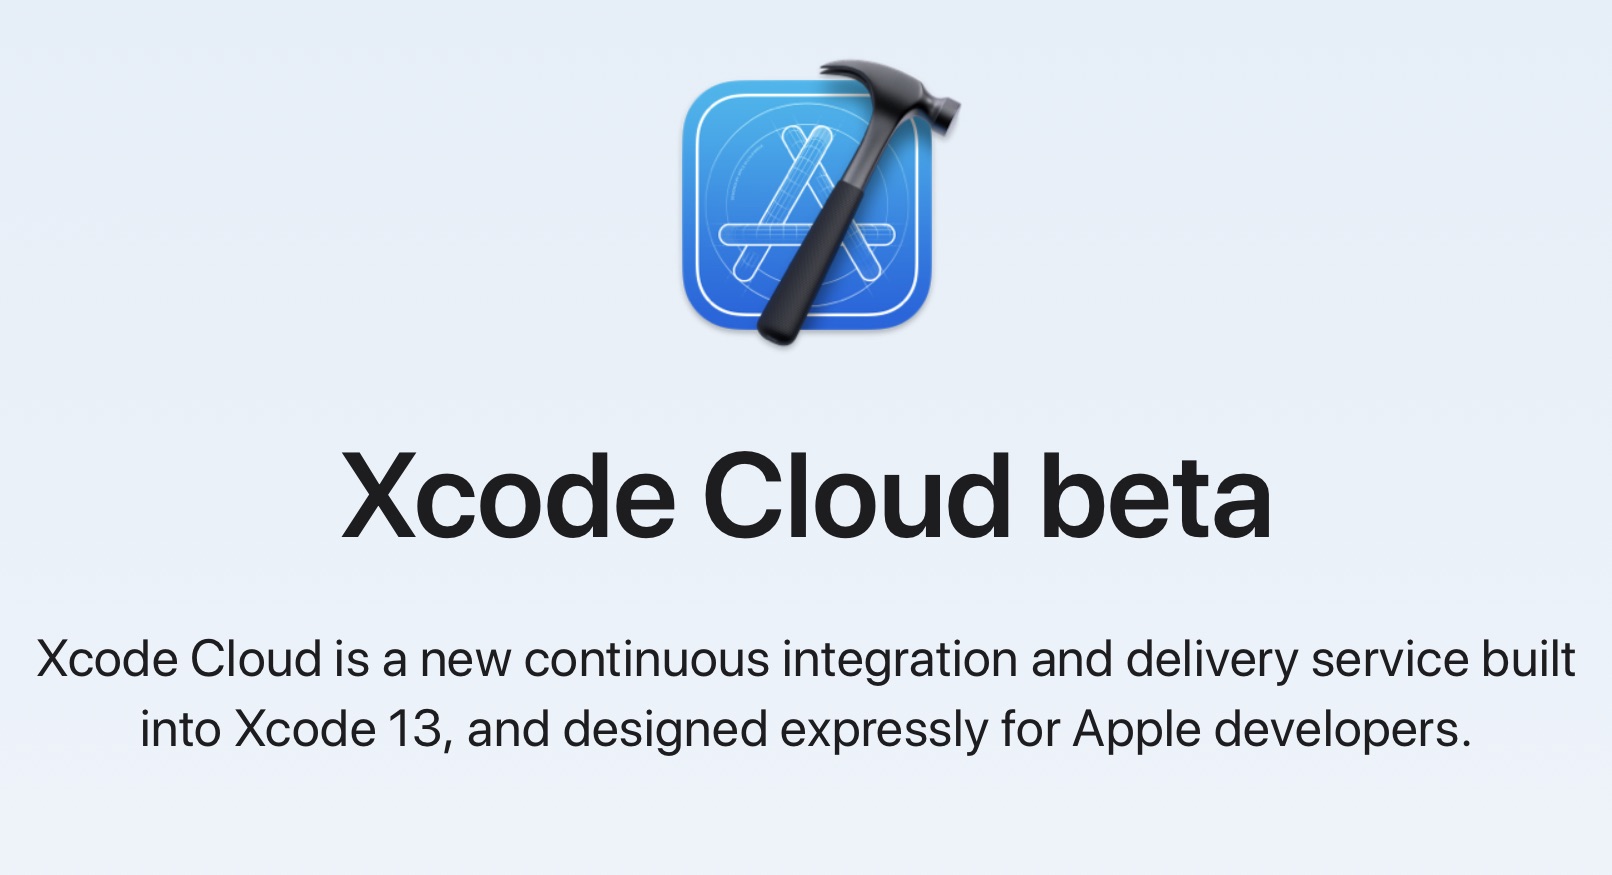 xcode cloud